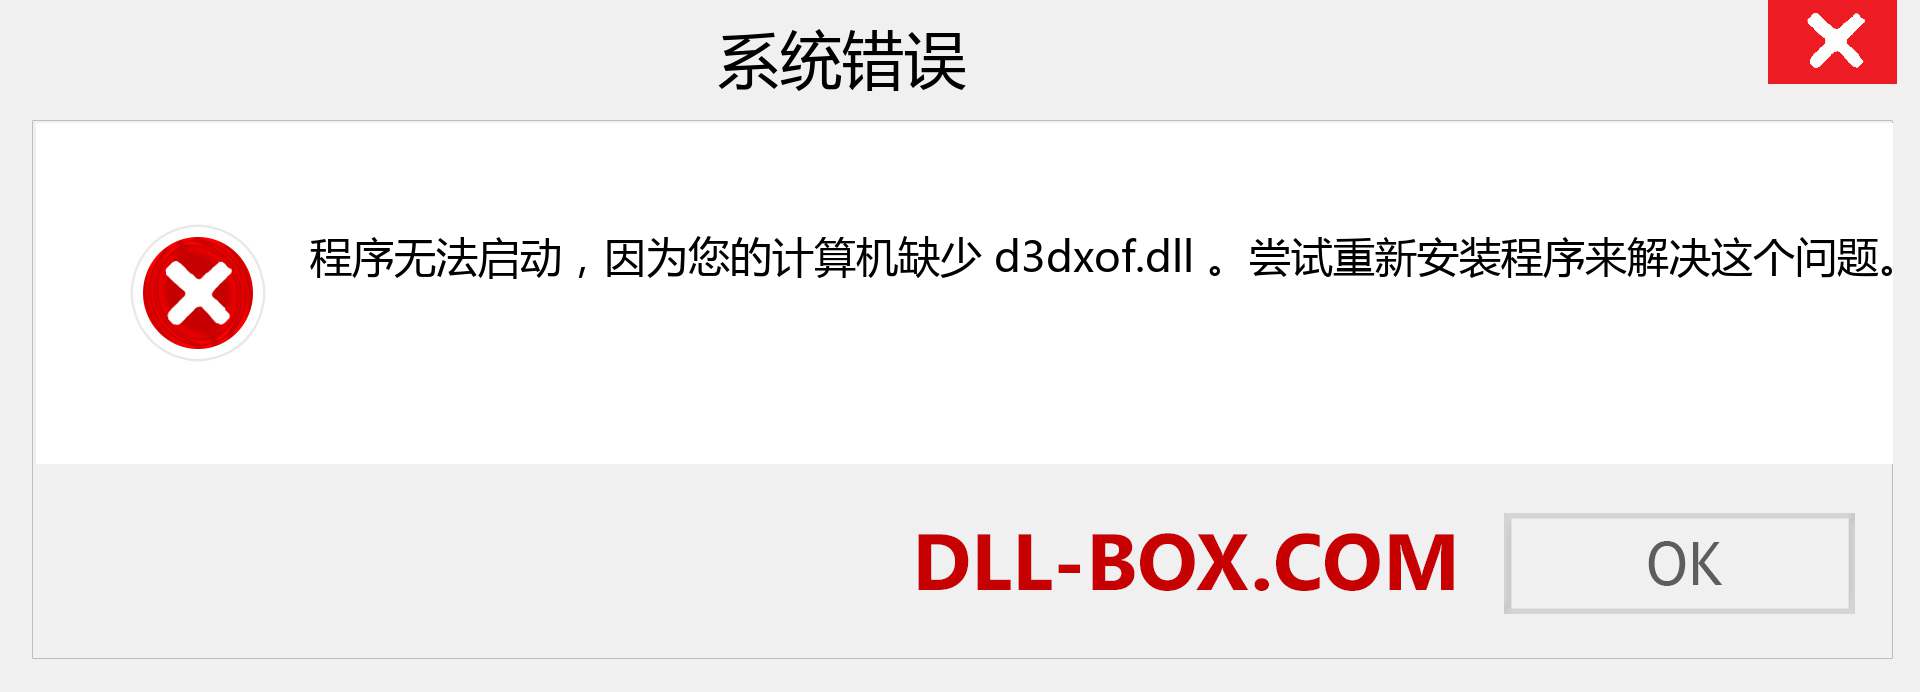 d3dxof.dll 文件丢失？。 适用于 Windows 7、8、10 的下载 - 修复 Windows、照片、图像上的 d3dxof dll 丢失错误